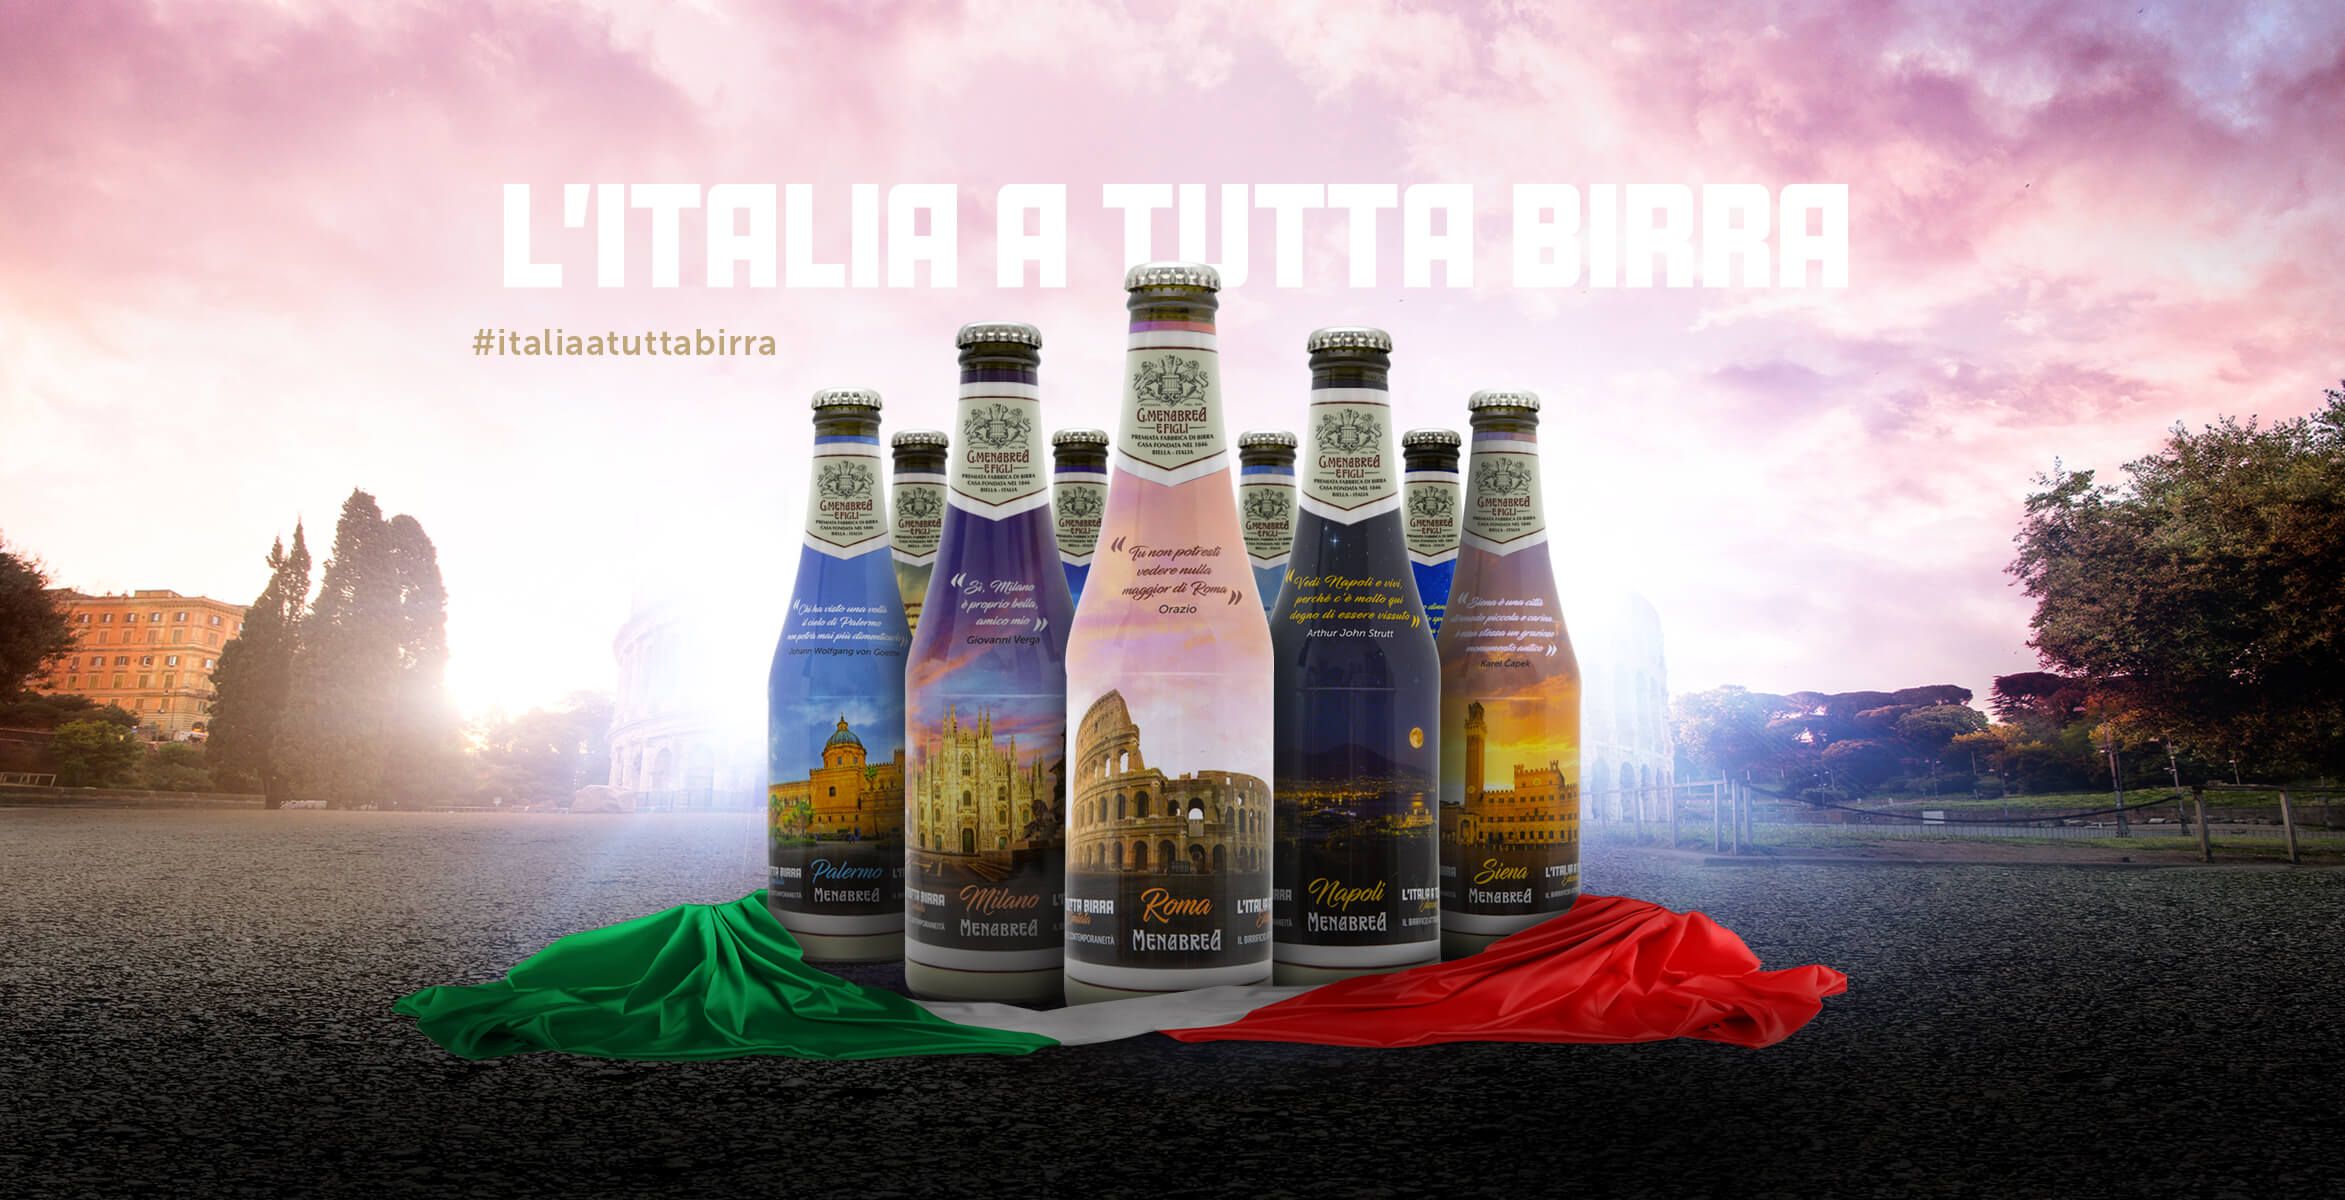 nuova collezione di Birra Menabrea l'Italia a tutta birra mobile image